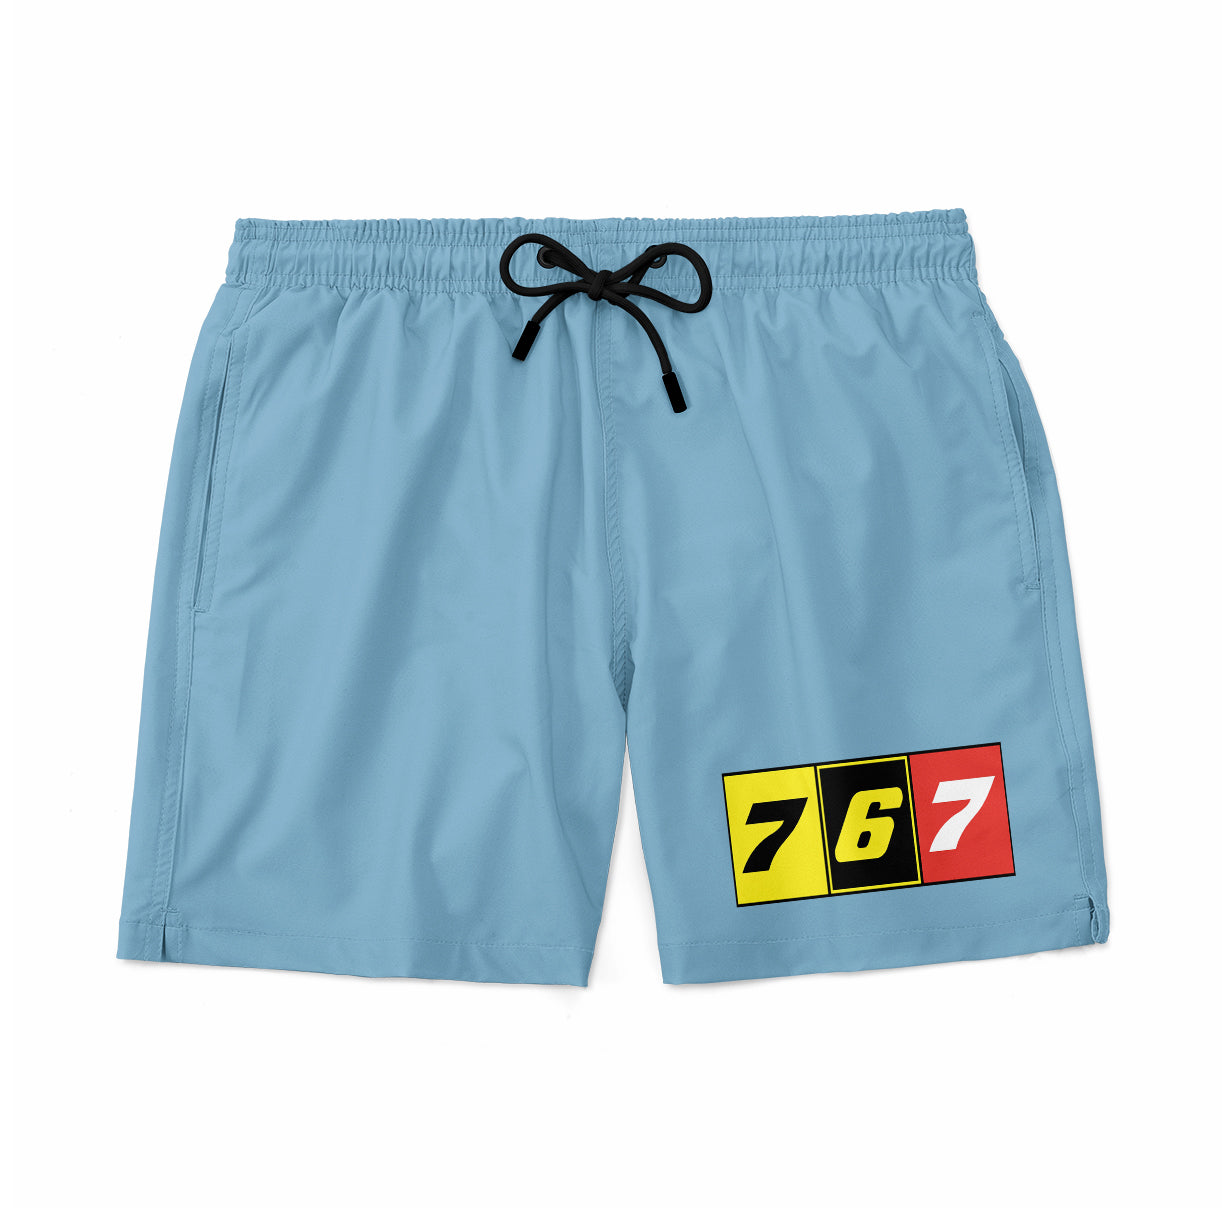 Flat Colourful 767 Designed Swim Trunks & Shorts